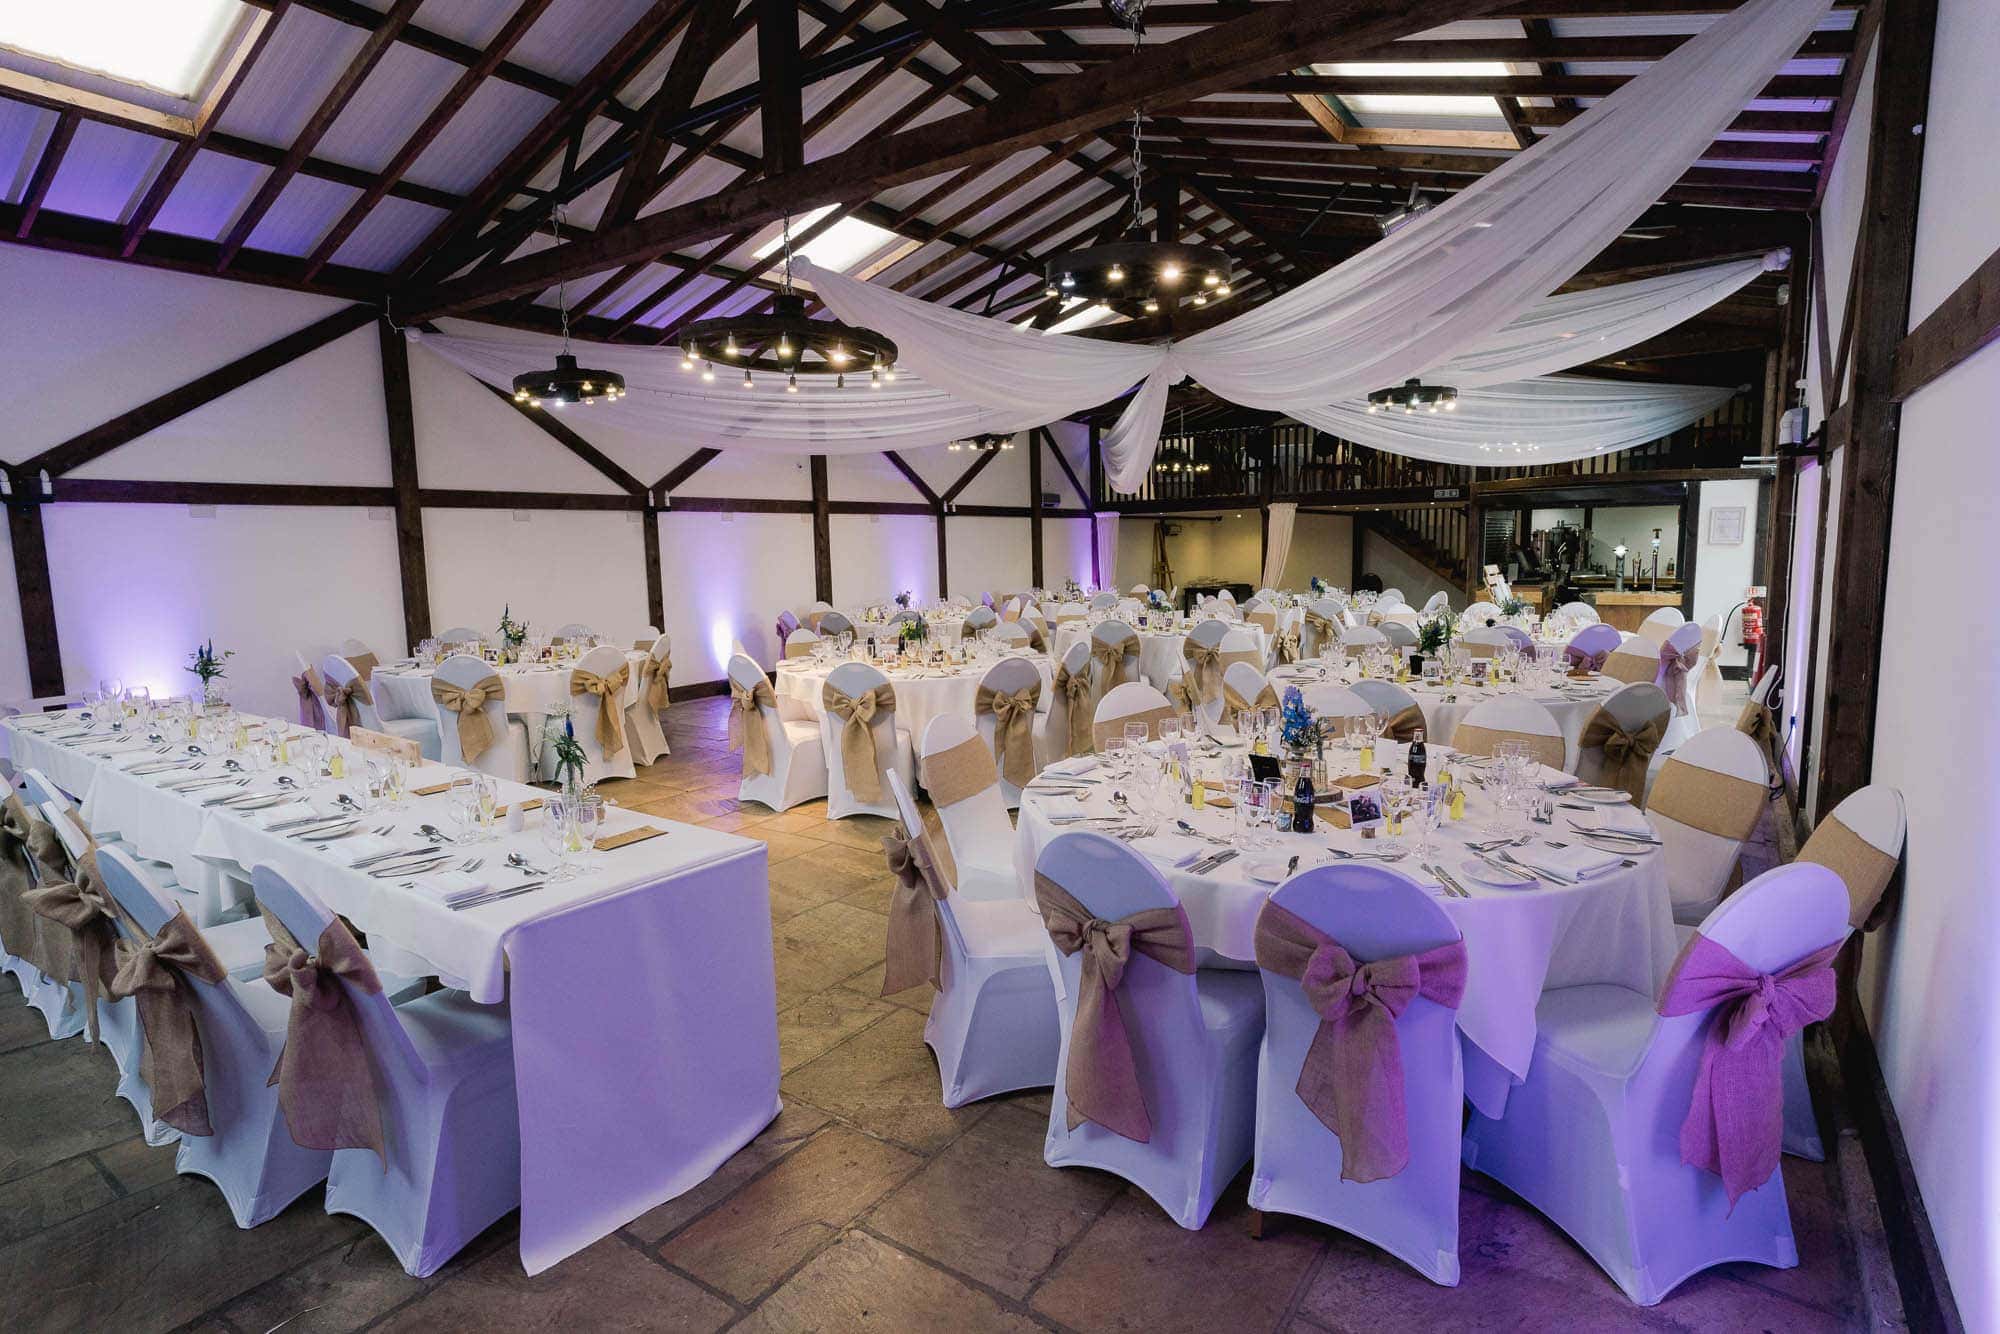 Blackstock Country Estate Wedding Venue in Sussex